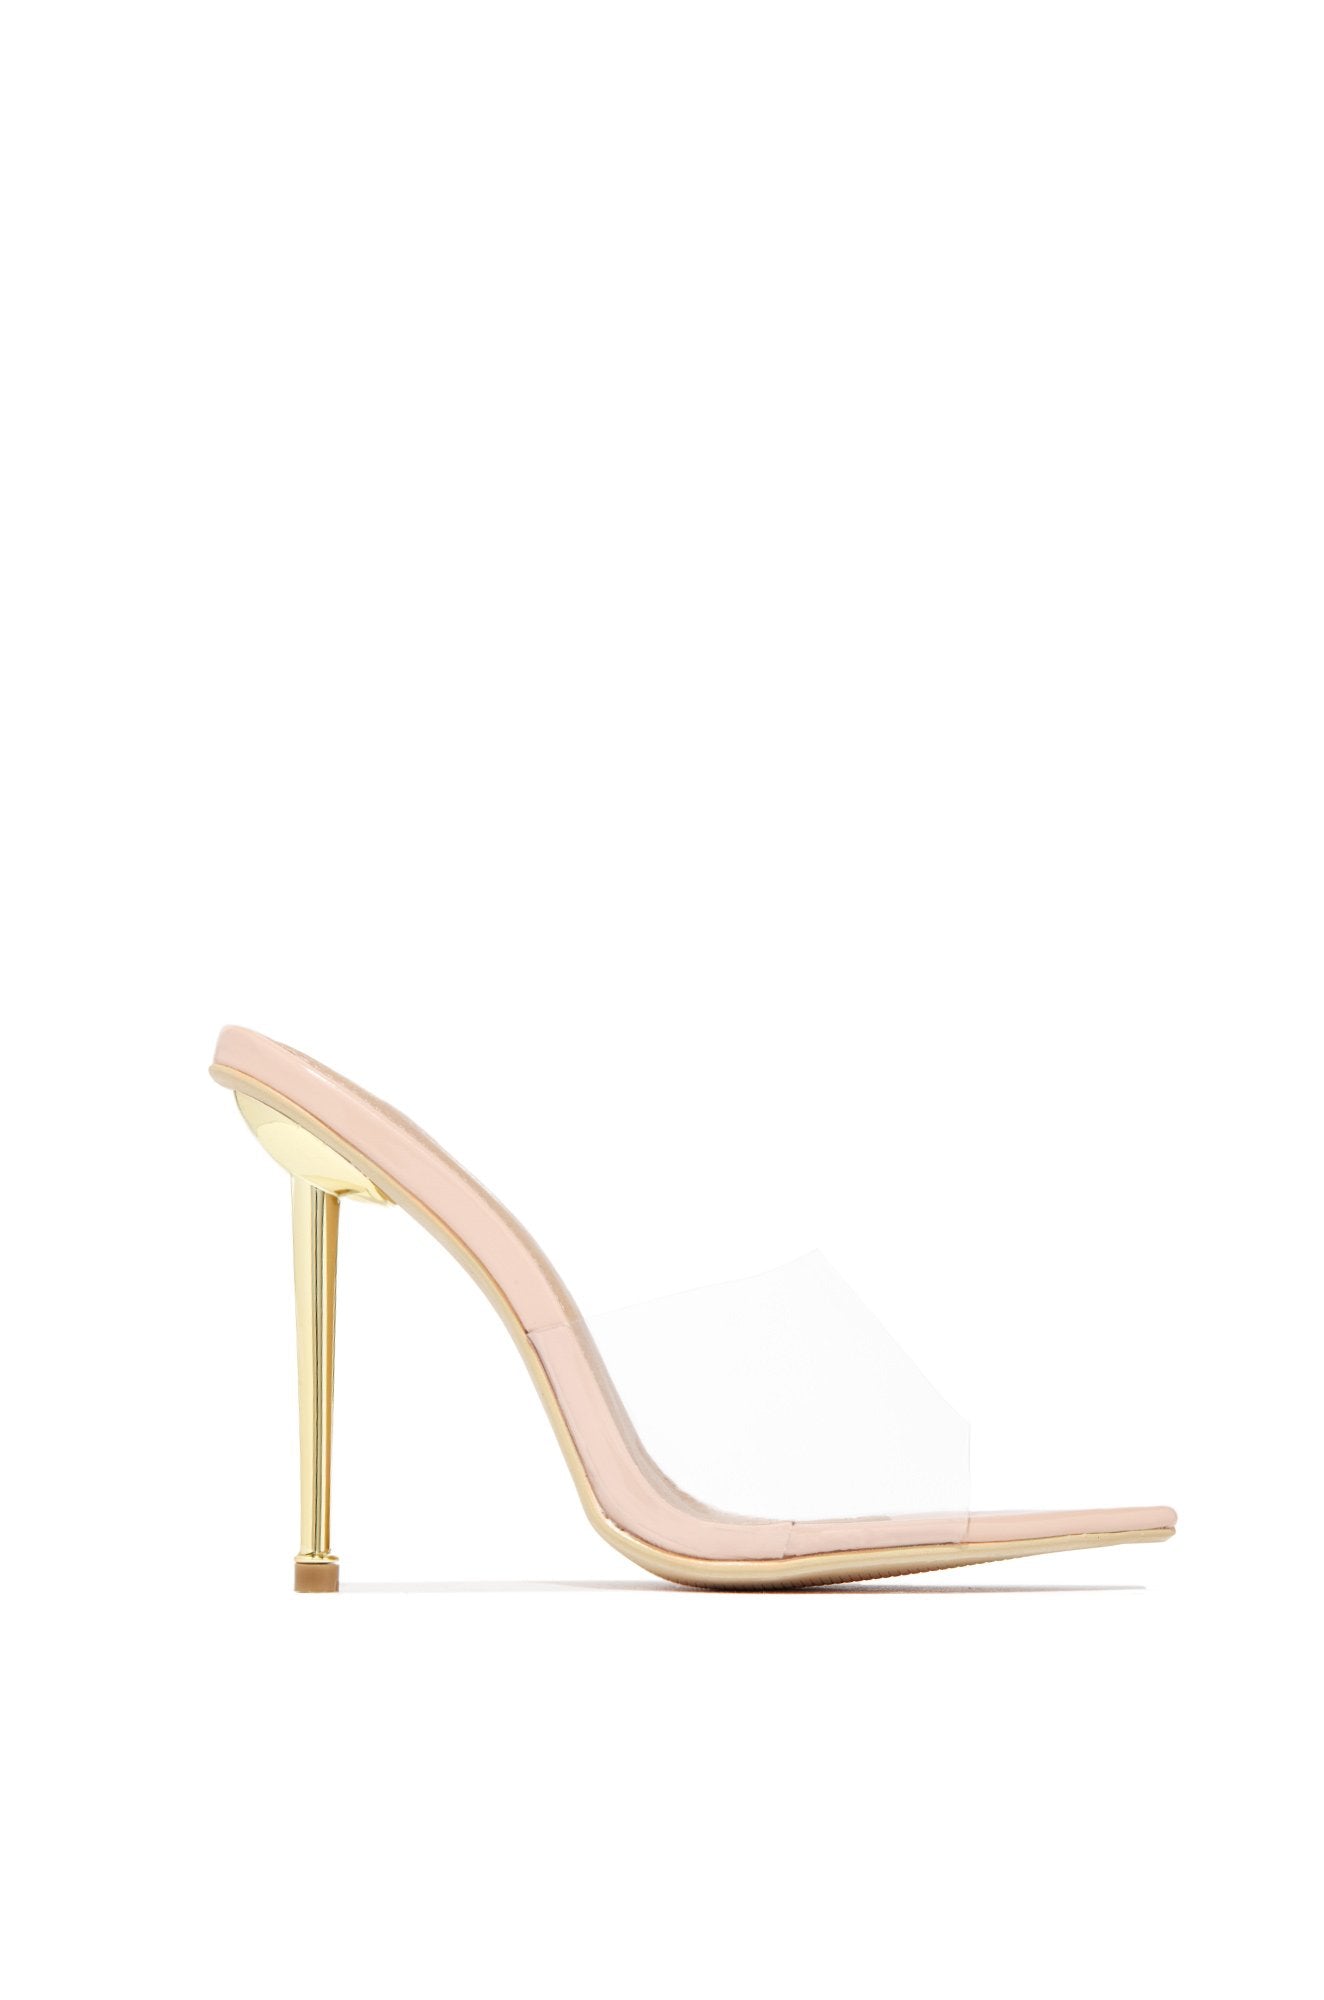 nude gold heels